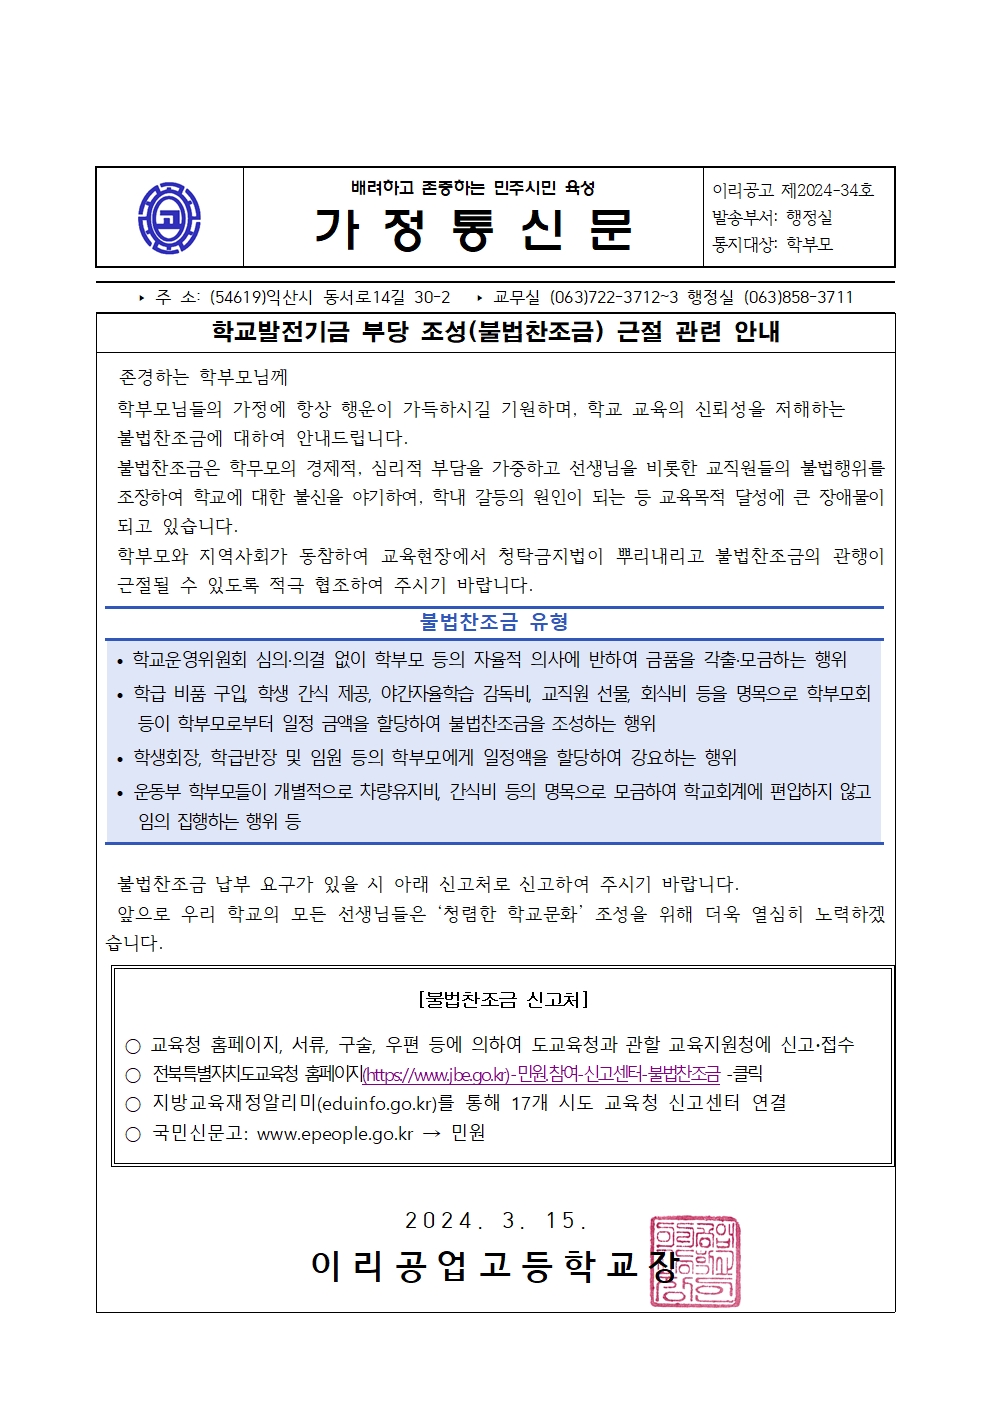 240315_[가정통신문]학교발전기금 부당 조성(불법찬조금) 근절 관련 안내